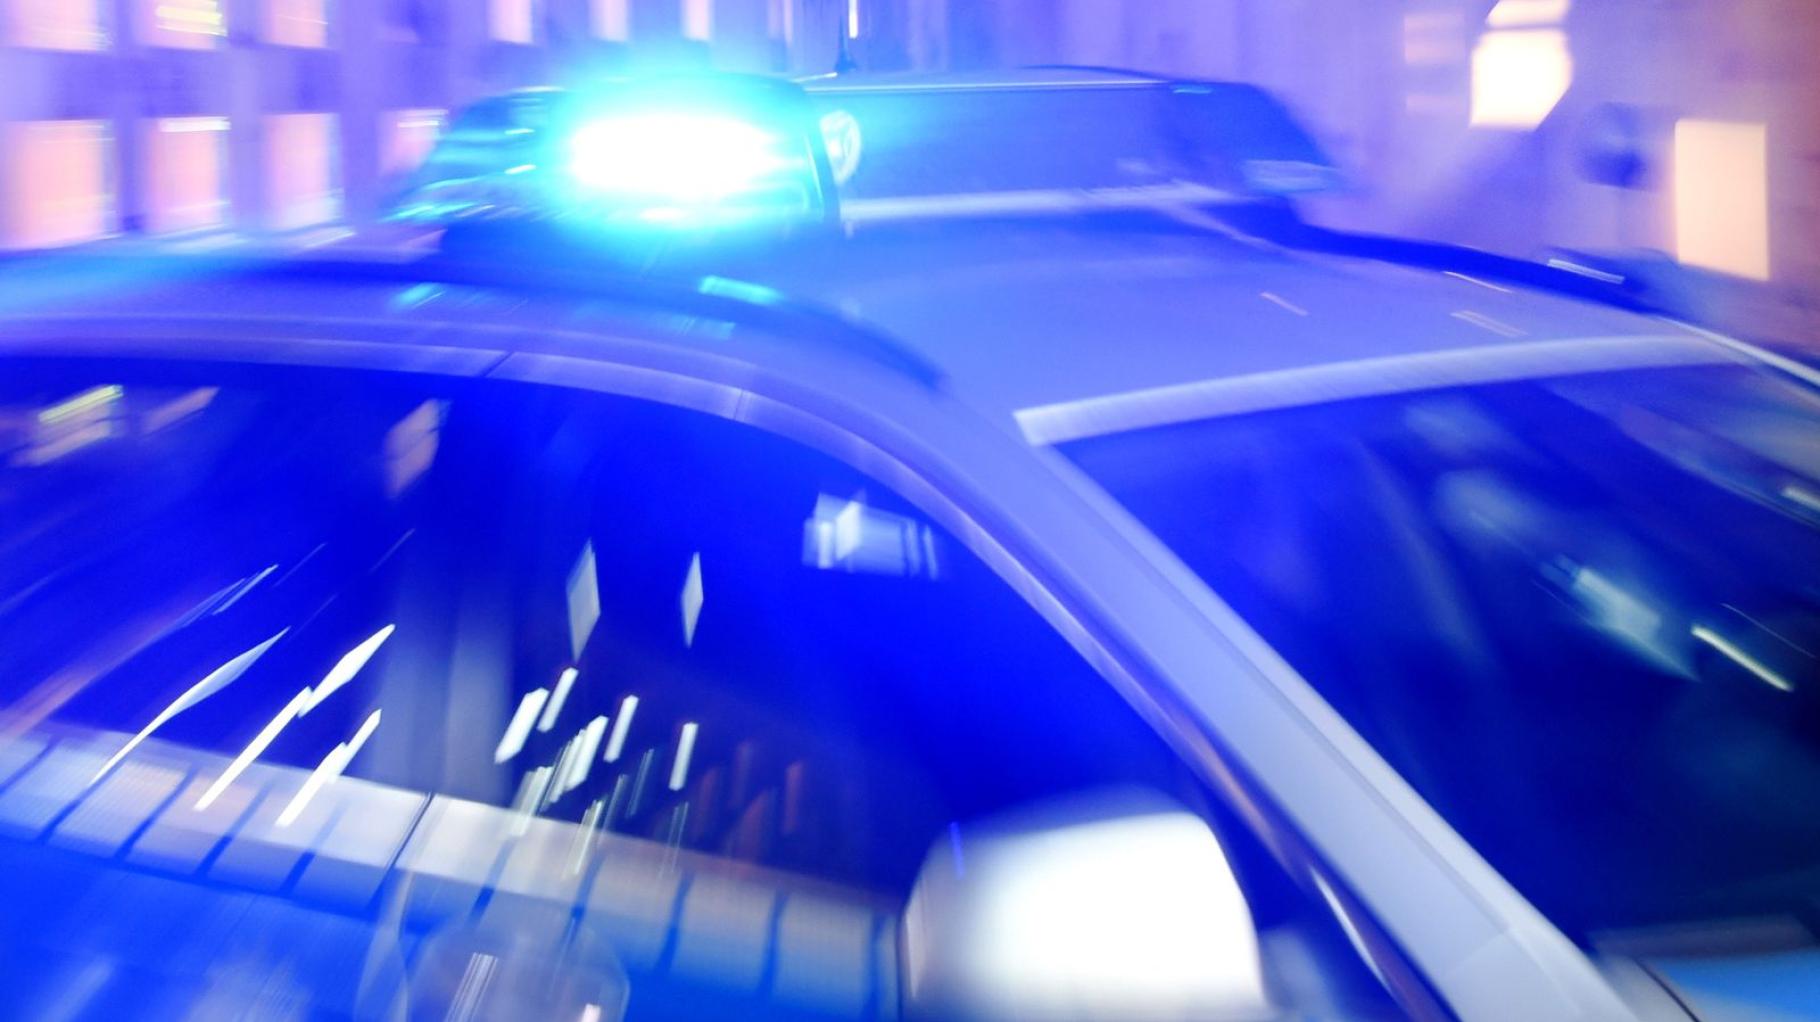 Mord in Neubrandenburg: Obduktion angeordnet - Täter noch flüchtig